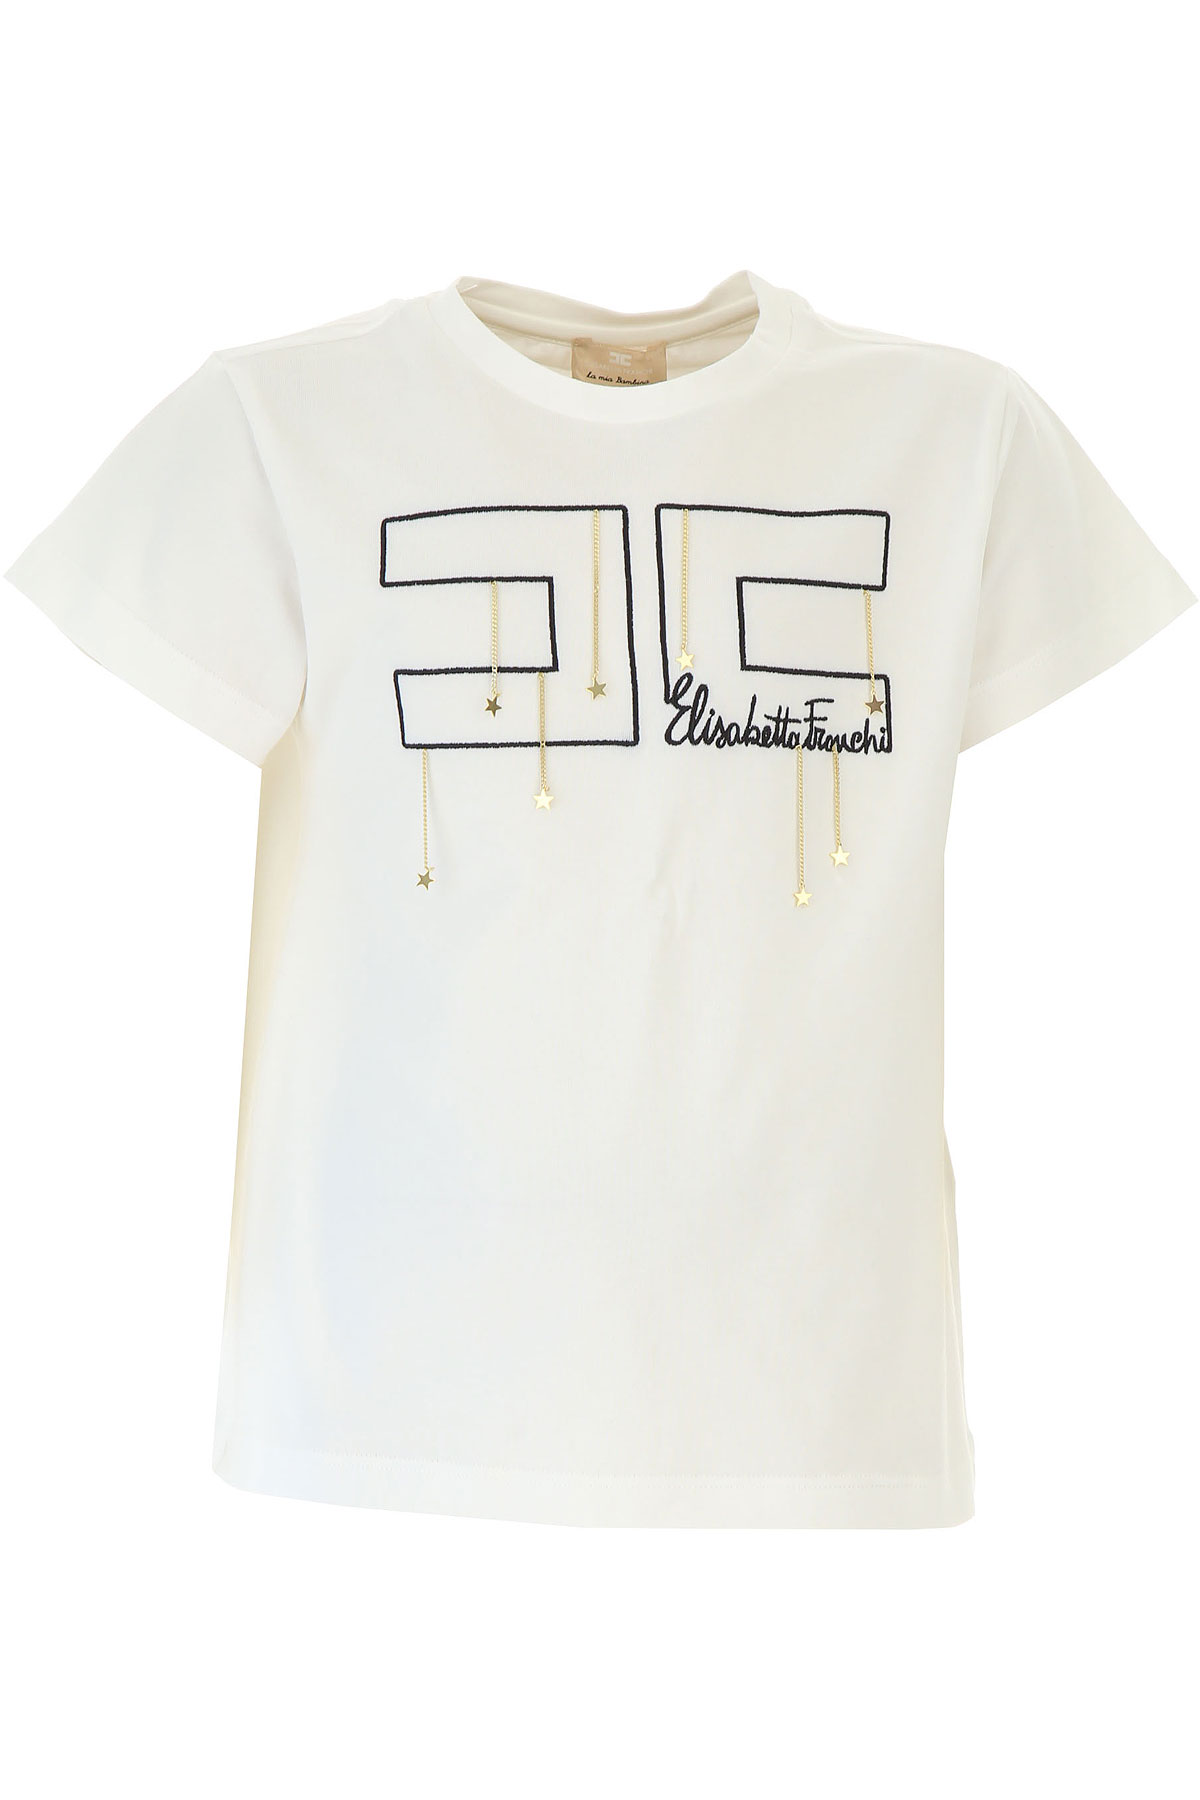 Elisabetta Franchi Kinder T-Shirt für Mädchen Günstig im Sale, Weiss, Baumwolle, 2017, L M S XL XS XXS